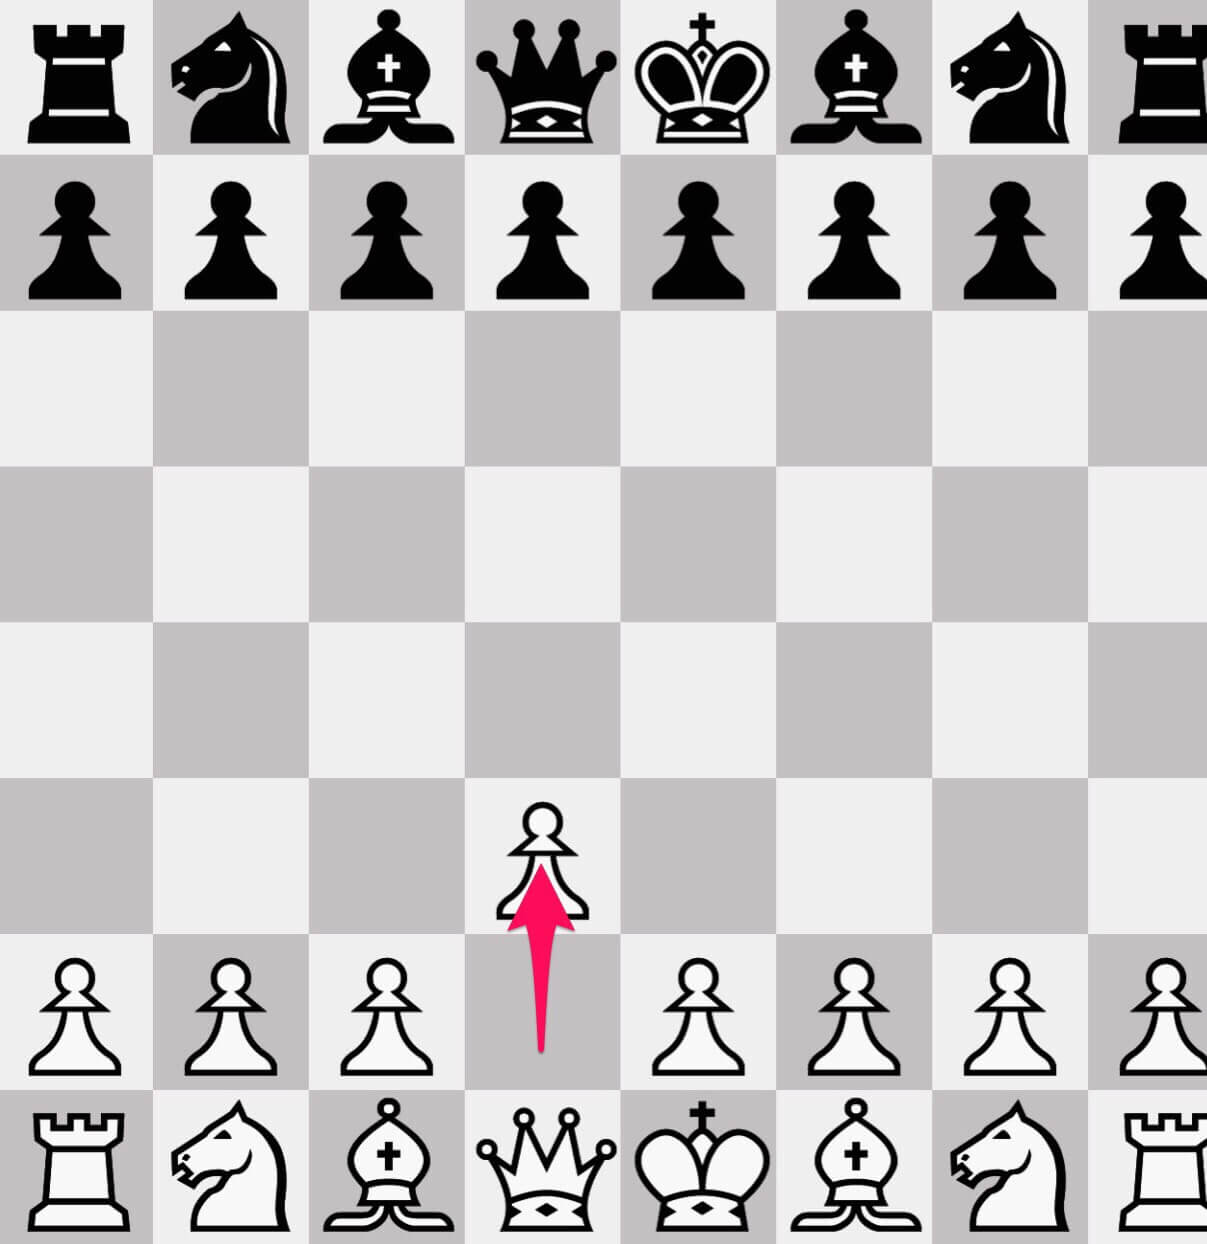 チェスのコマ『ポーン』の動き方